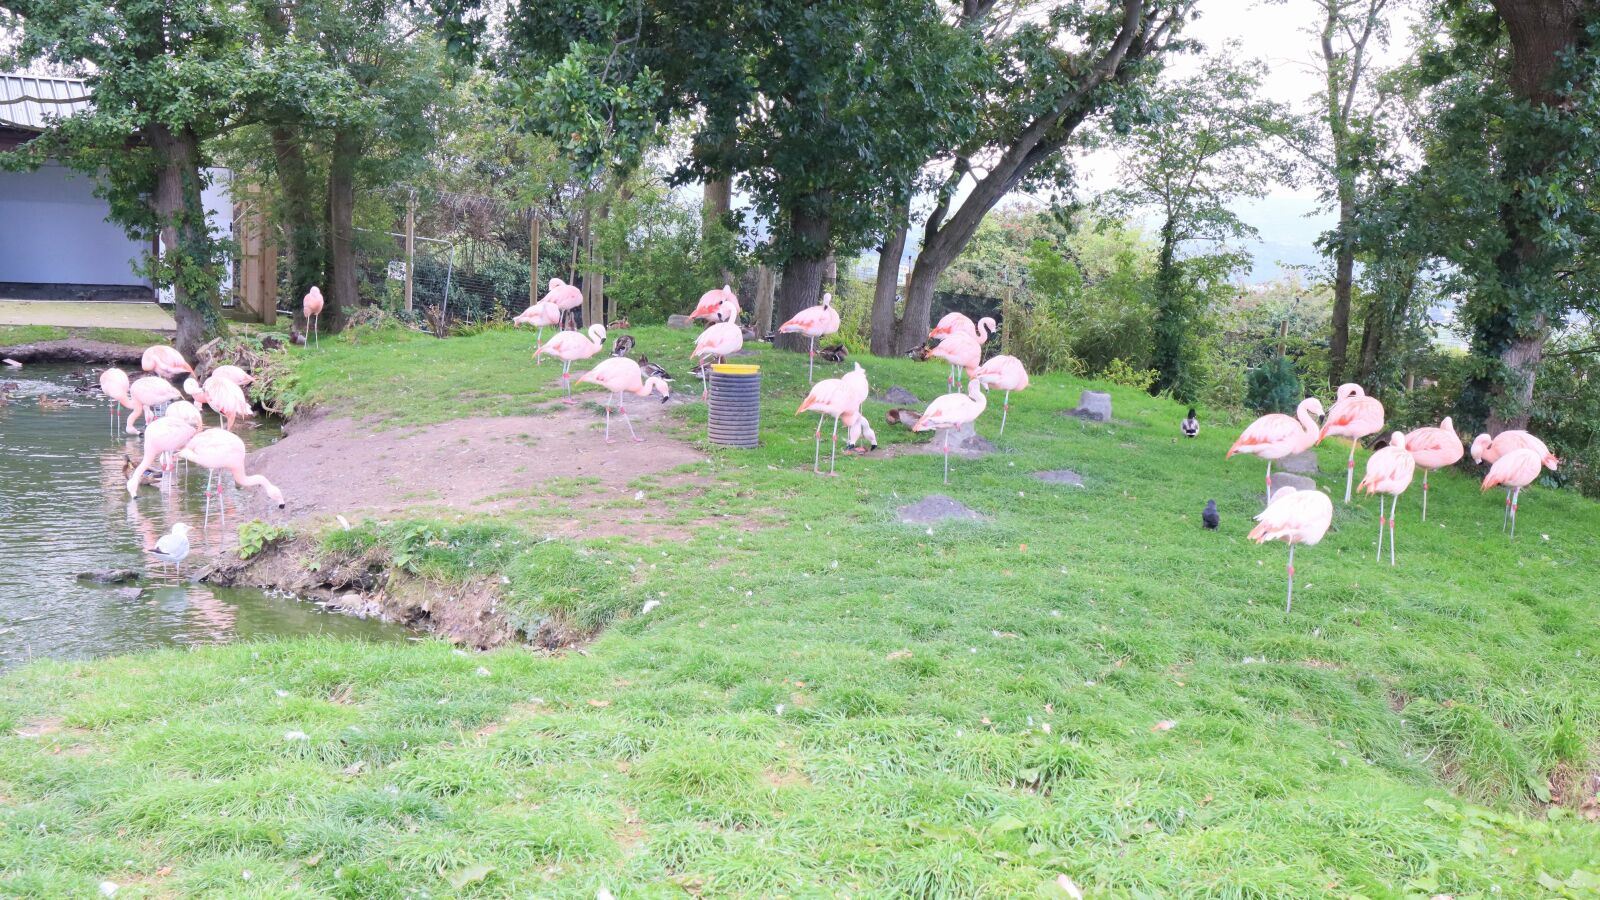 Canon EOS M50 (EOS Kiss M) sample photo. Flamingo, zoo, bird photography